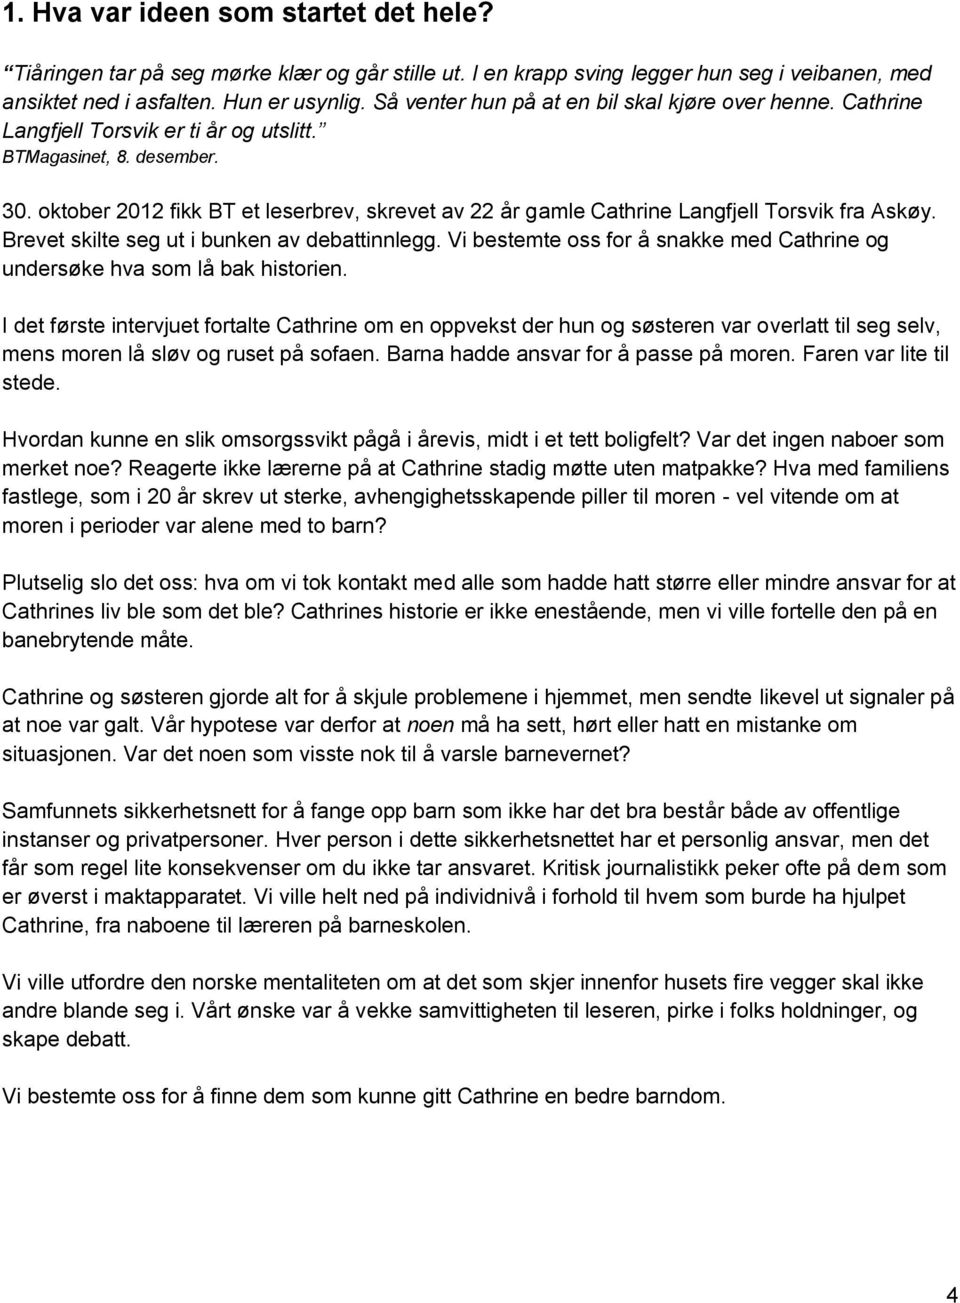 oktober 2012 fikk BT et leserbrev, skrevet av 22 år gamle Cathrine Langfjell Torsvik fra Askøy. Brevet skilte seg ut i bunken av debattinnlegg.